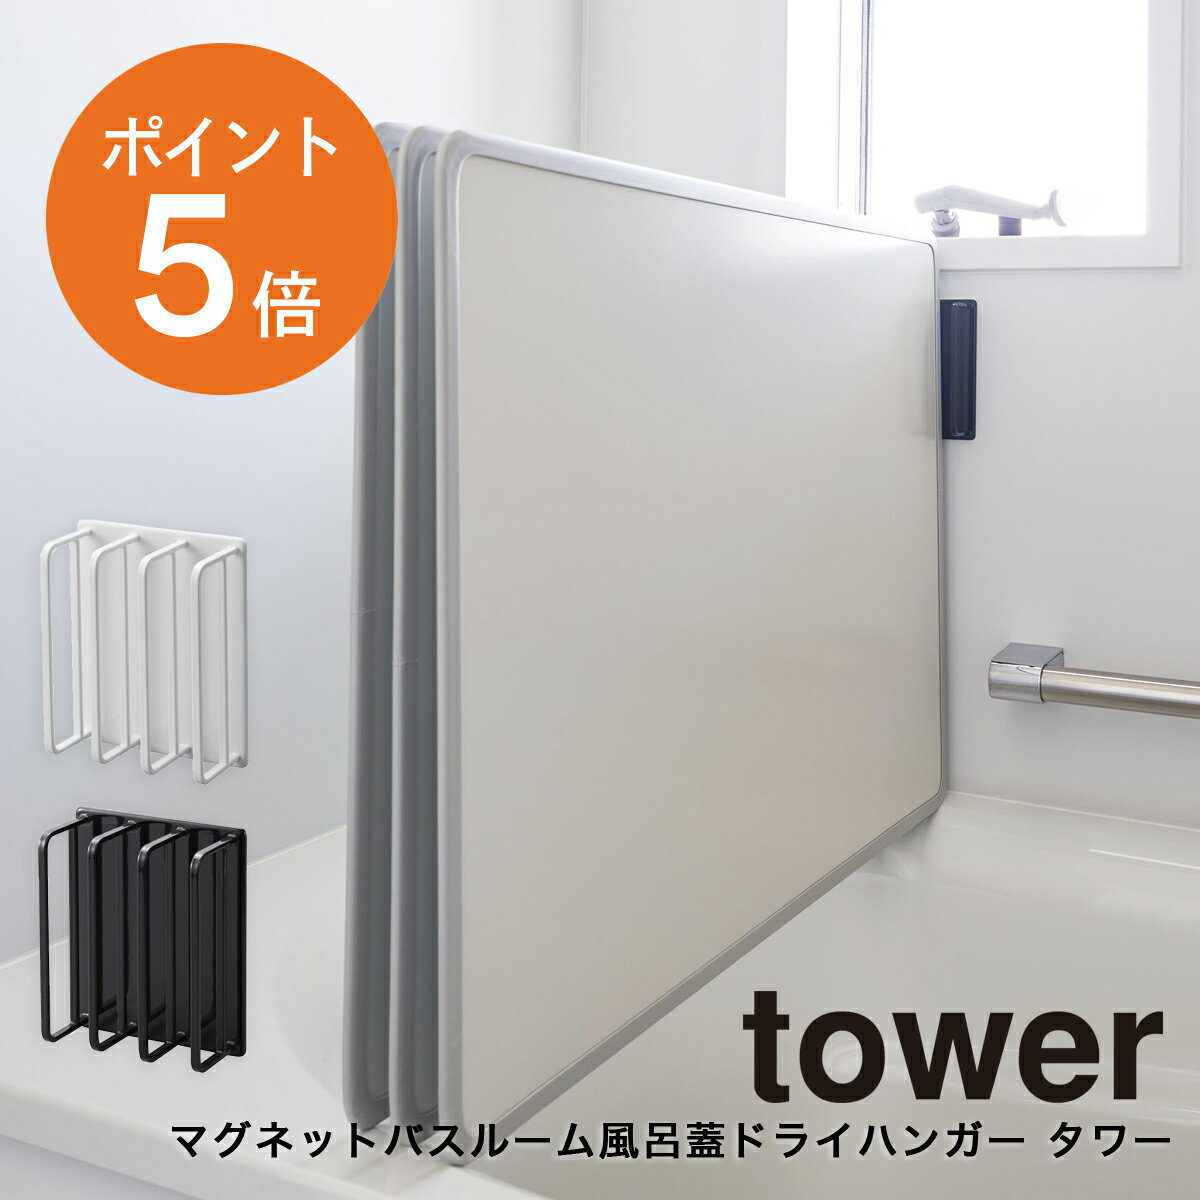  山崎実業 tower 2枚組 3枚組 対応 ホワイト ブラック 3955 3956 タワーシリーズ yamazaki